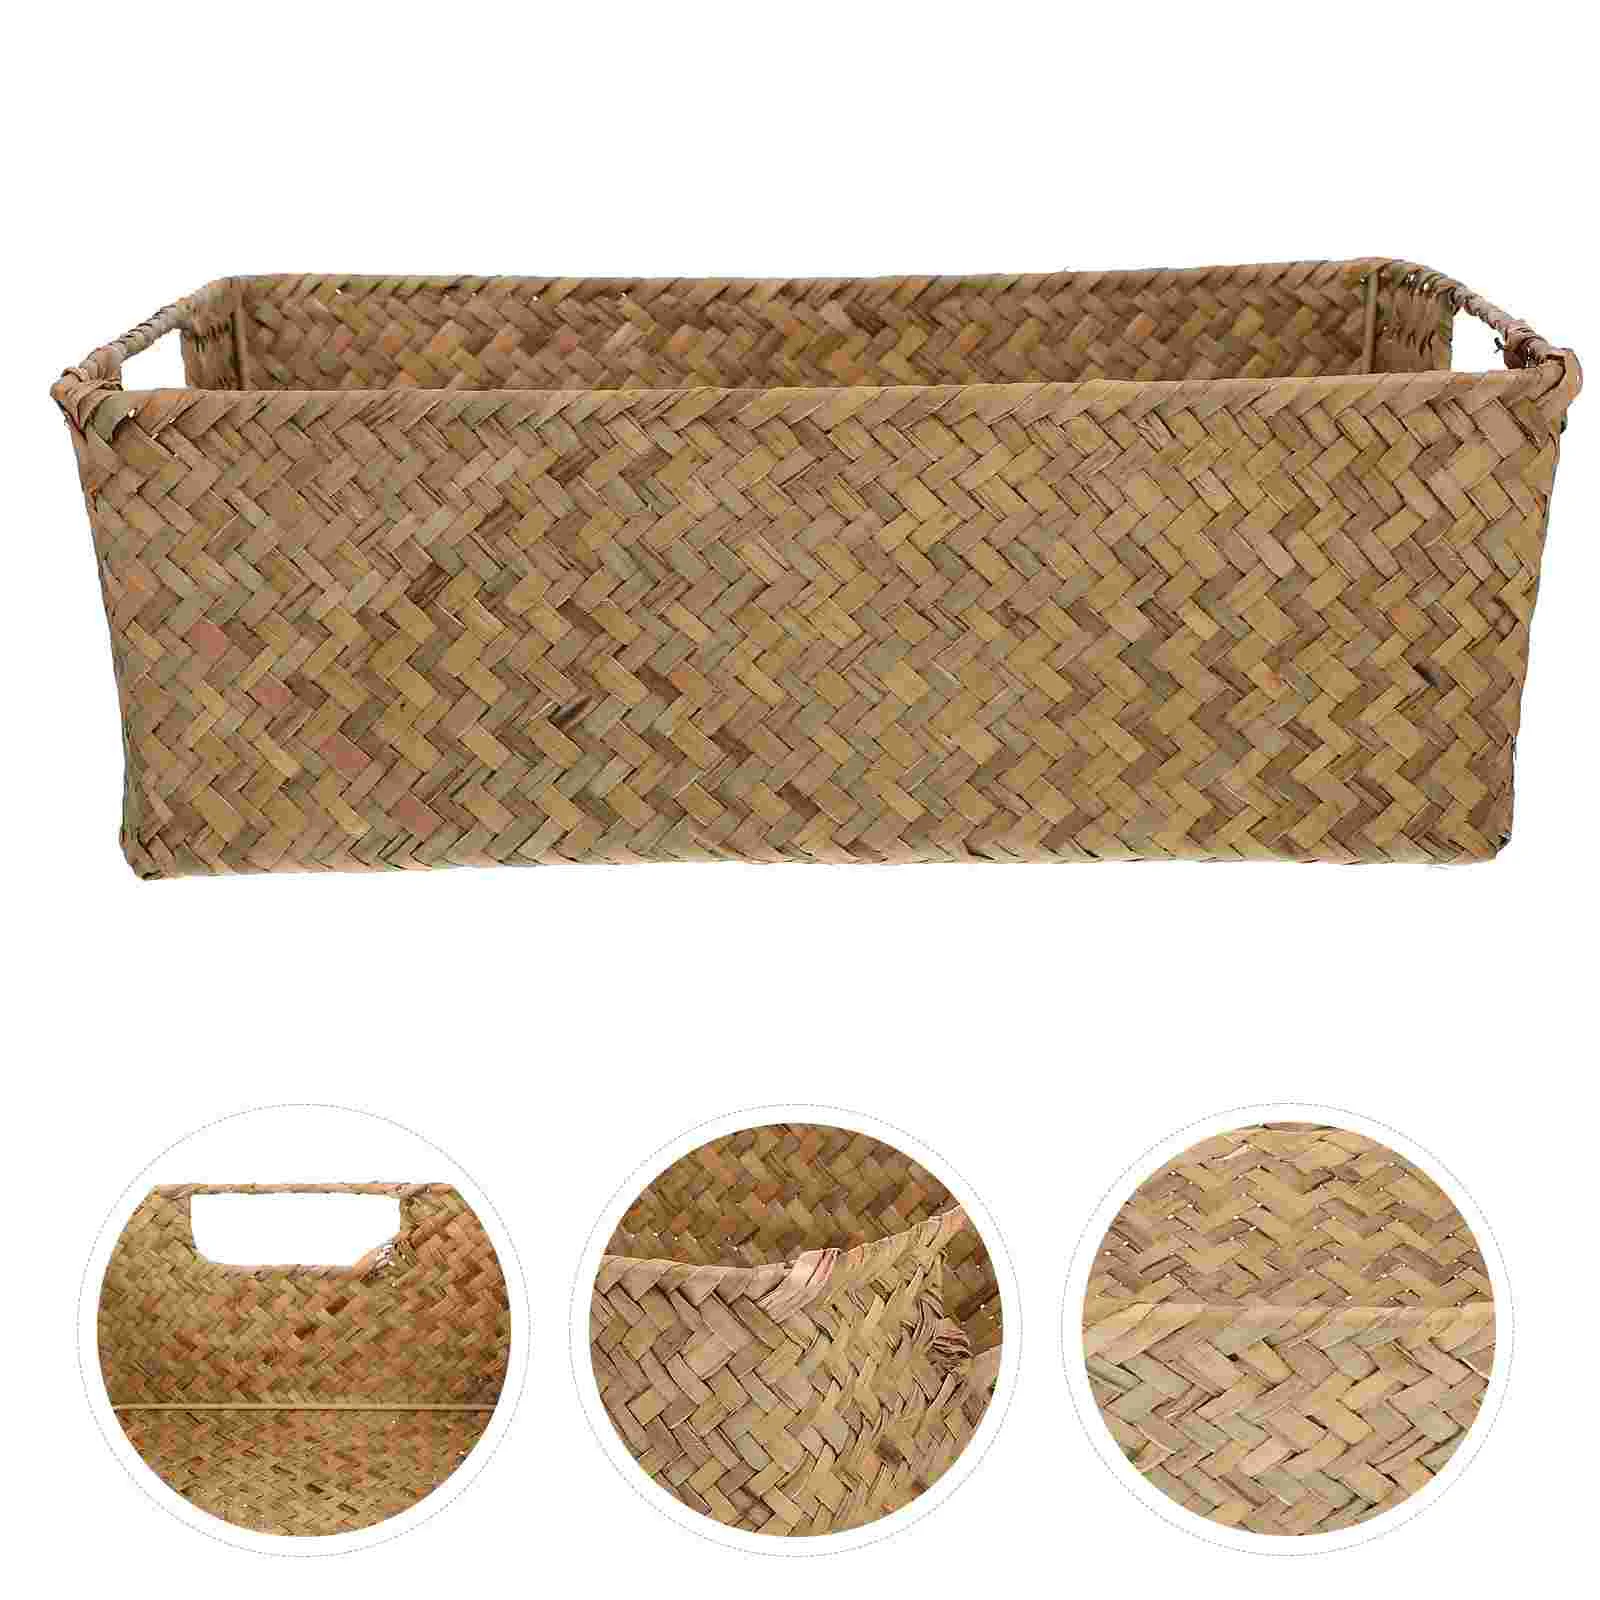 

Seagrass Storage Basket Water Hyacinth Baskets Rectangular Woven Straw Storage Box Rattan Storage Bins Handwoven Organizer Bin